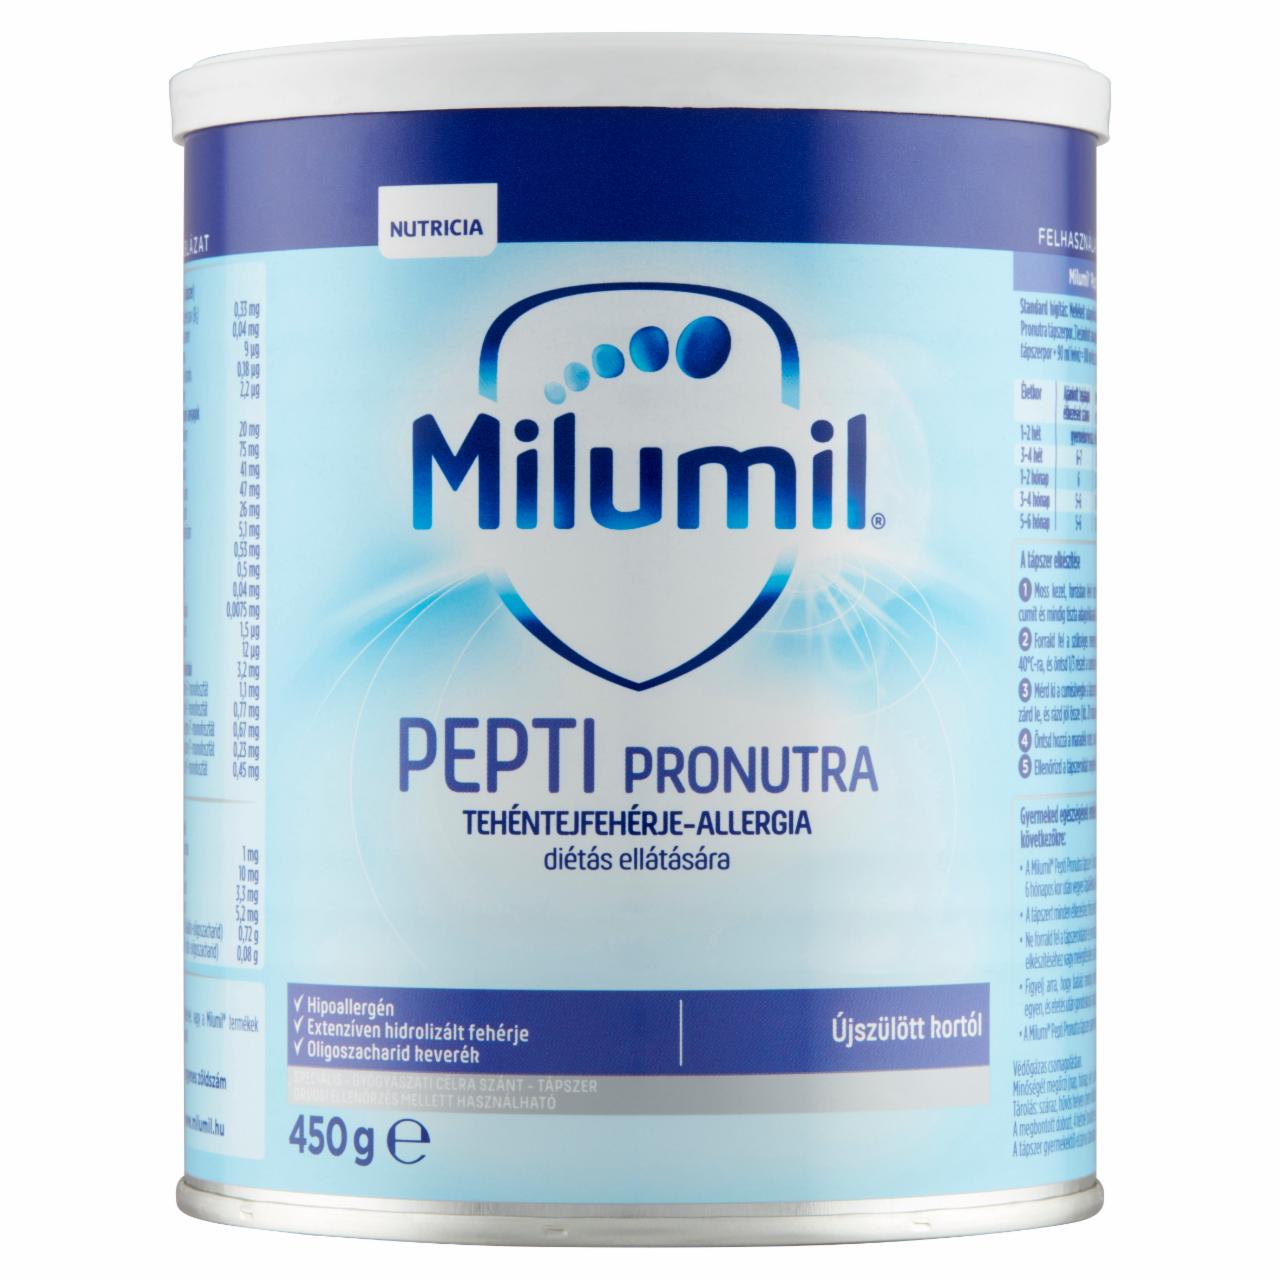 Képek - Milumil Pepti Pronutra speciális - gyógyászati célra szánt - tápszer újszülött kortól 450 g